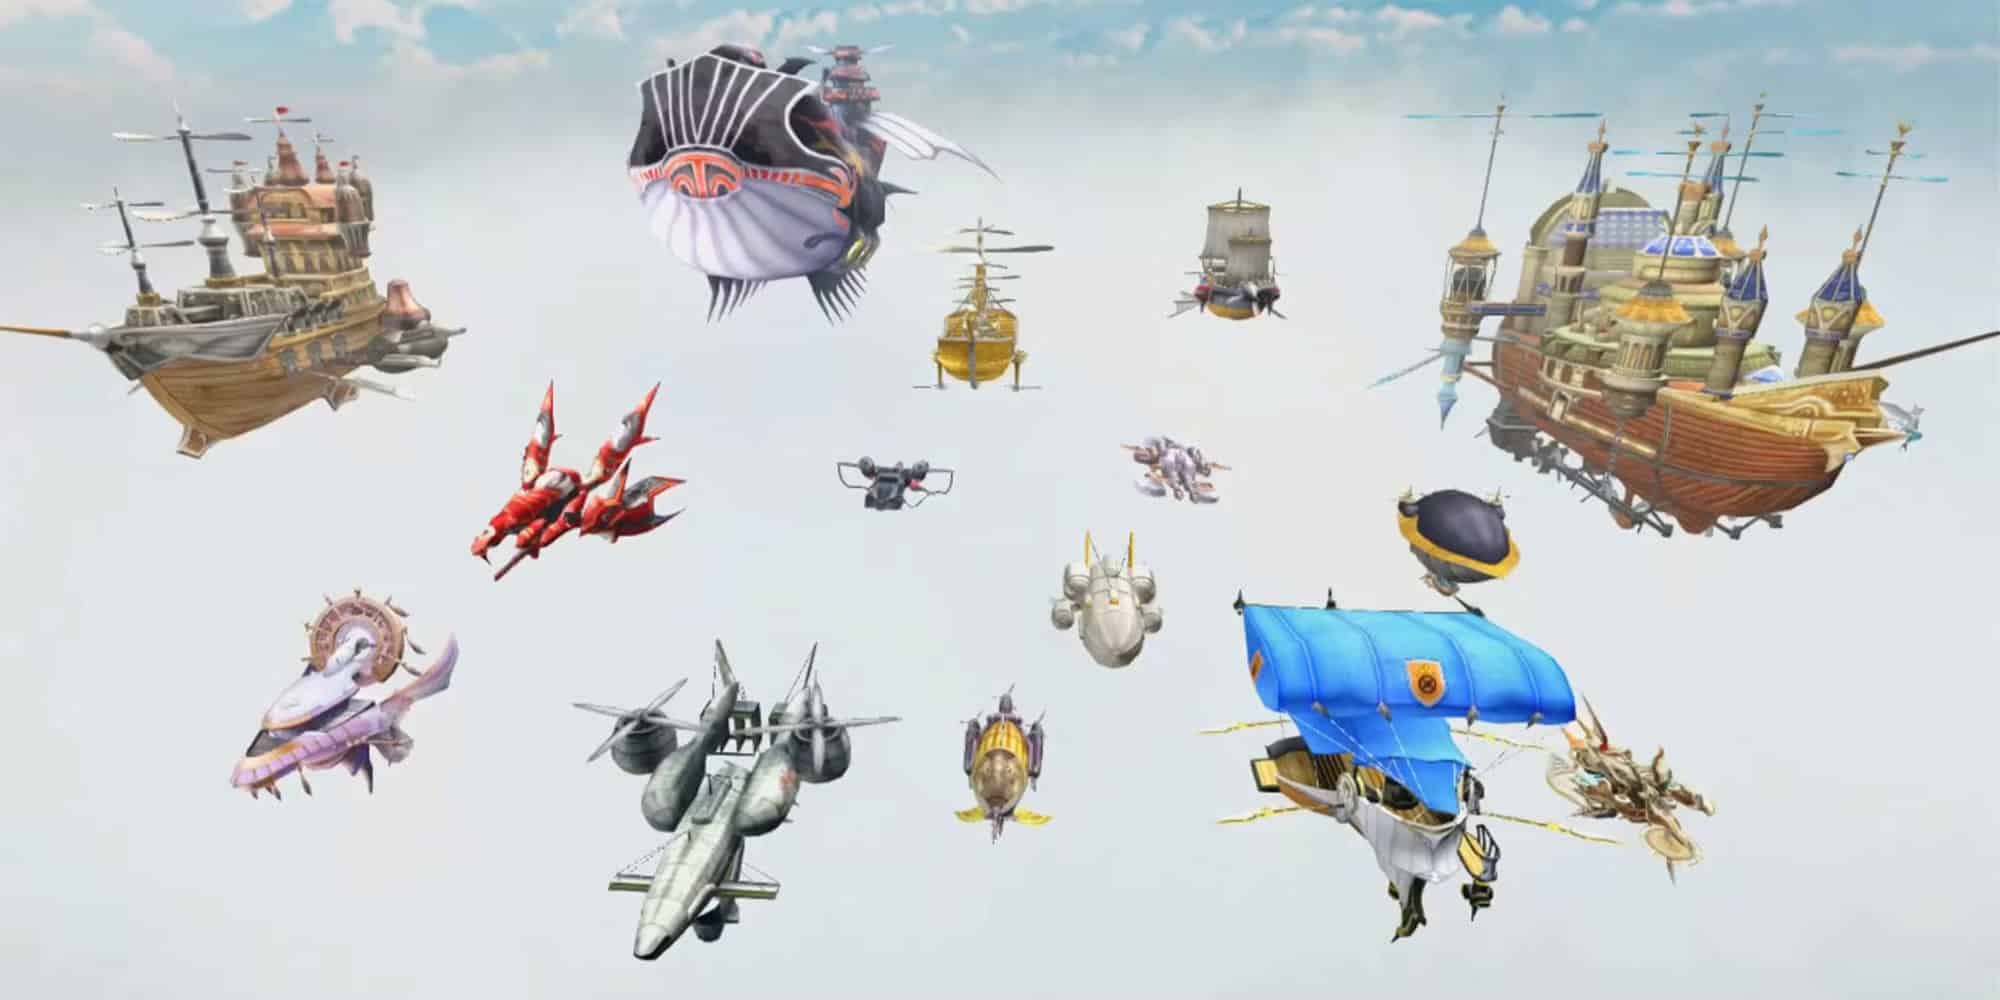 Final Fantasy Airships